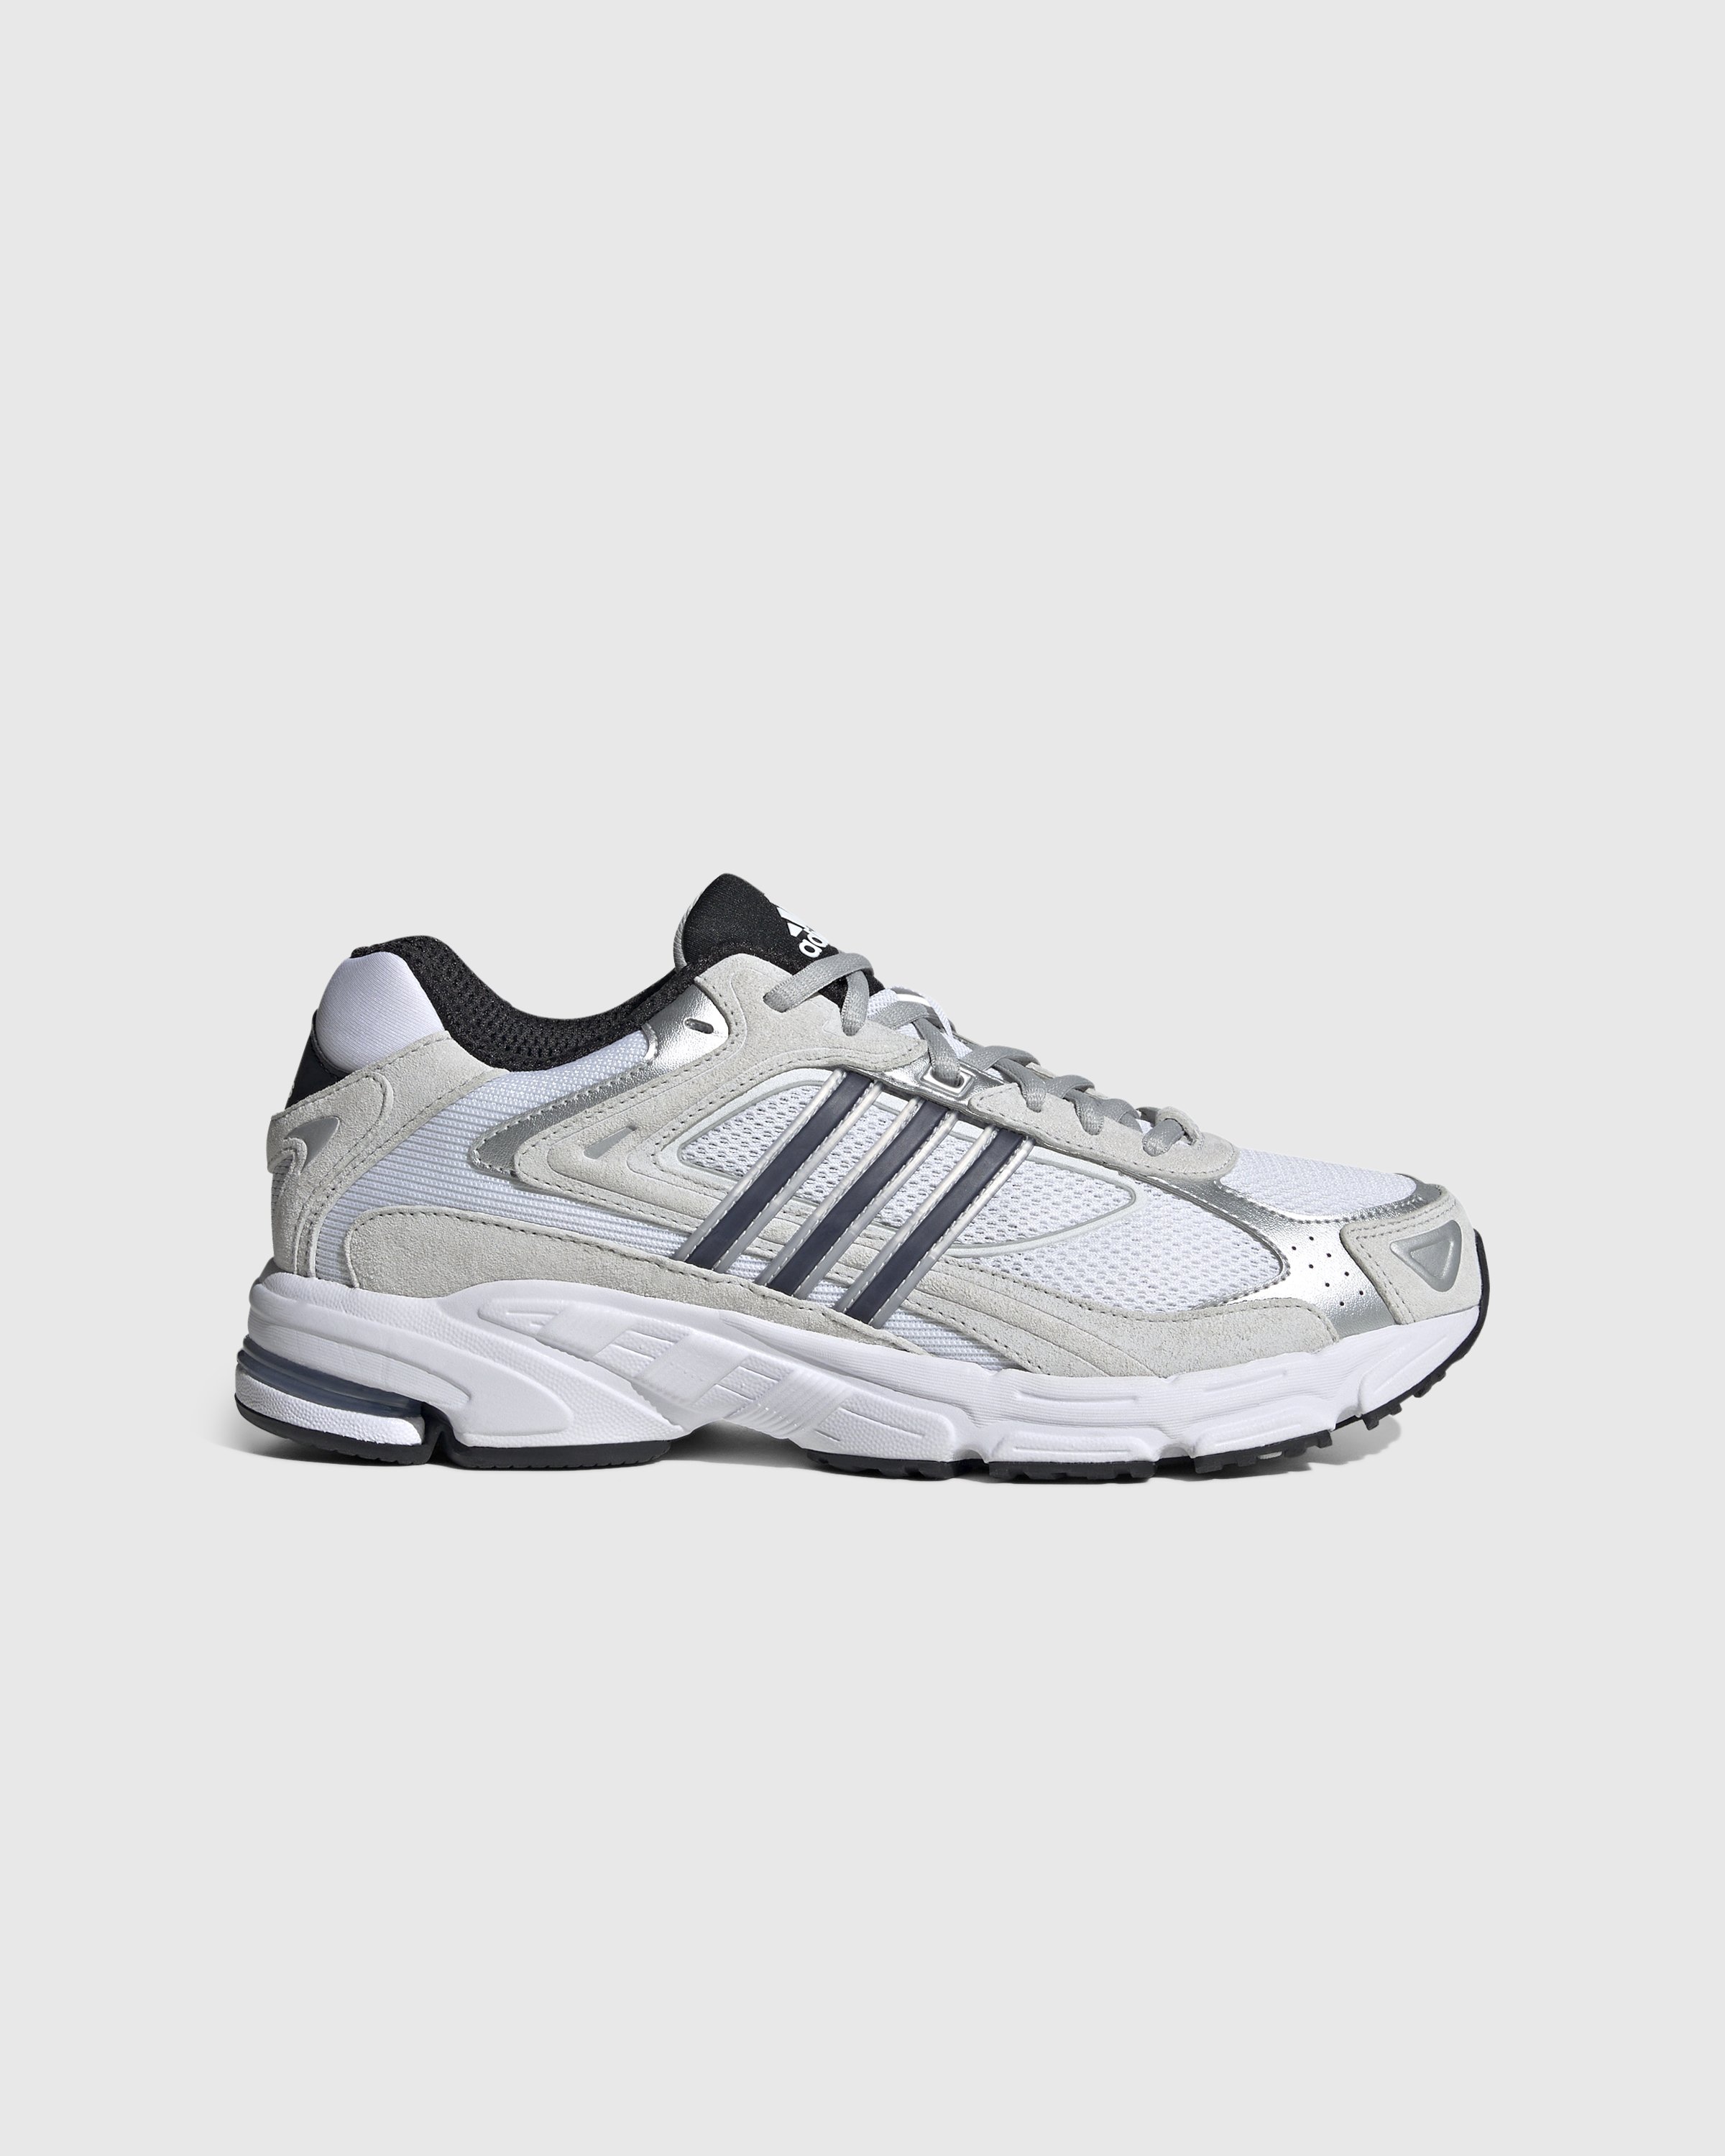 Adidas - Response CL White/Black - Footwear - White - Image 1